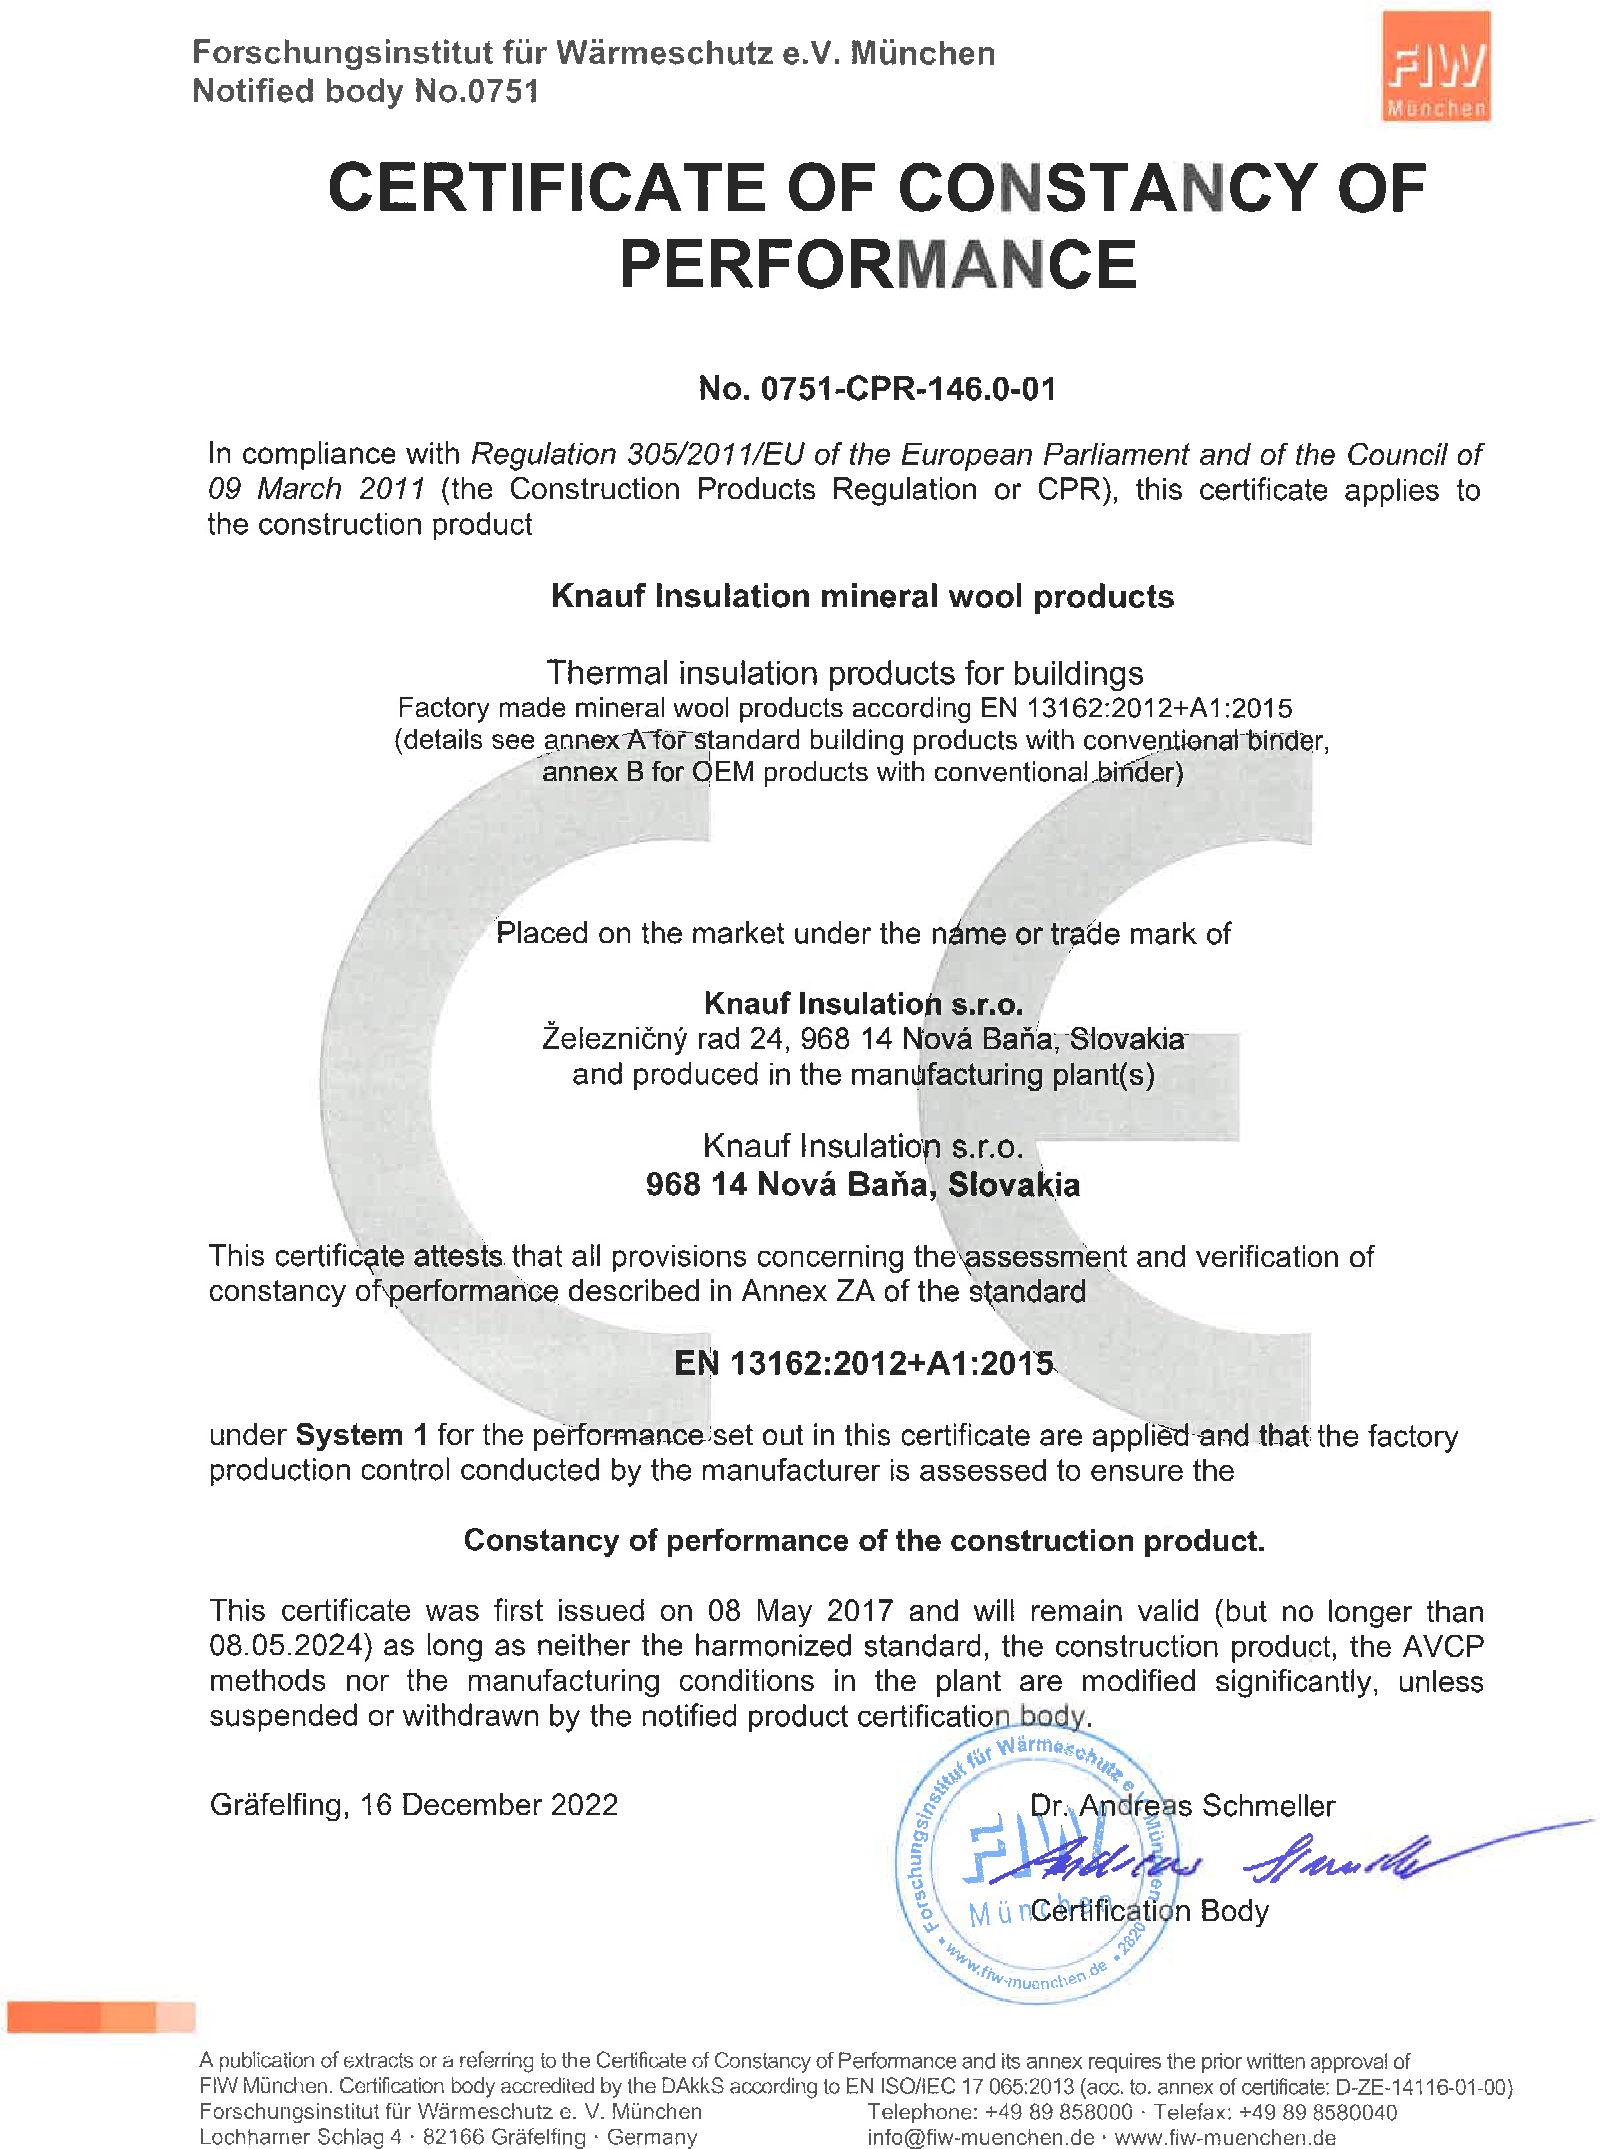 CE certifikát Knauf Insulation Nová Baňa